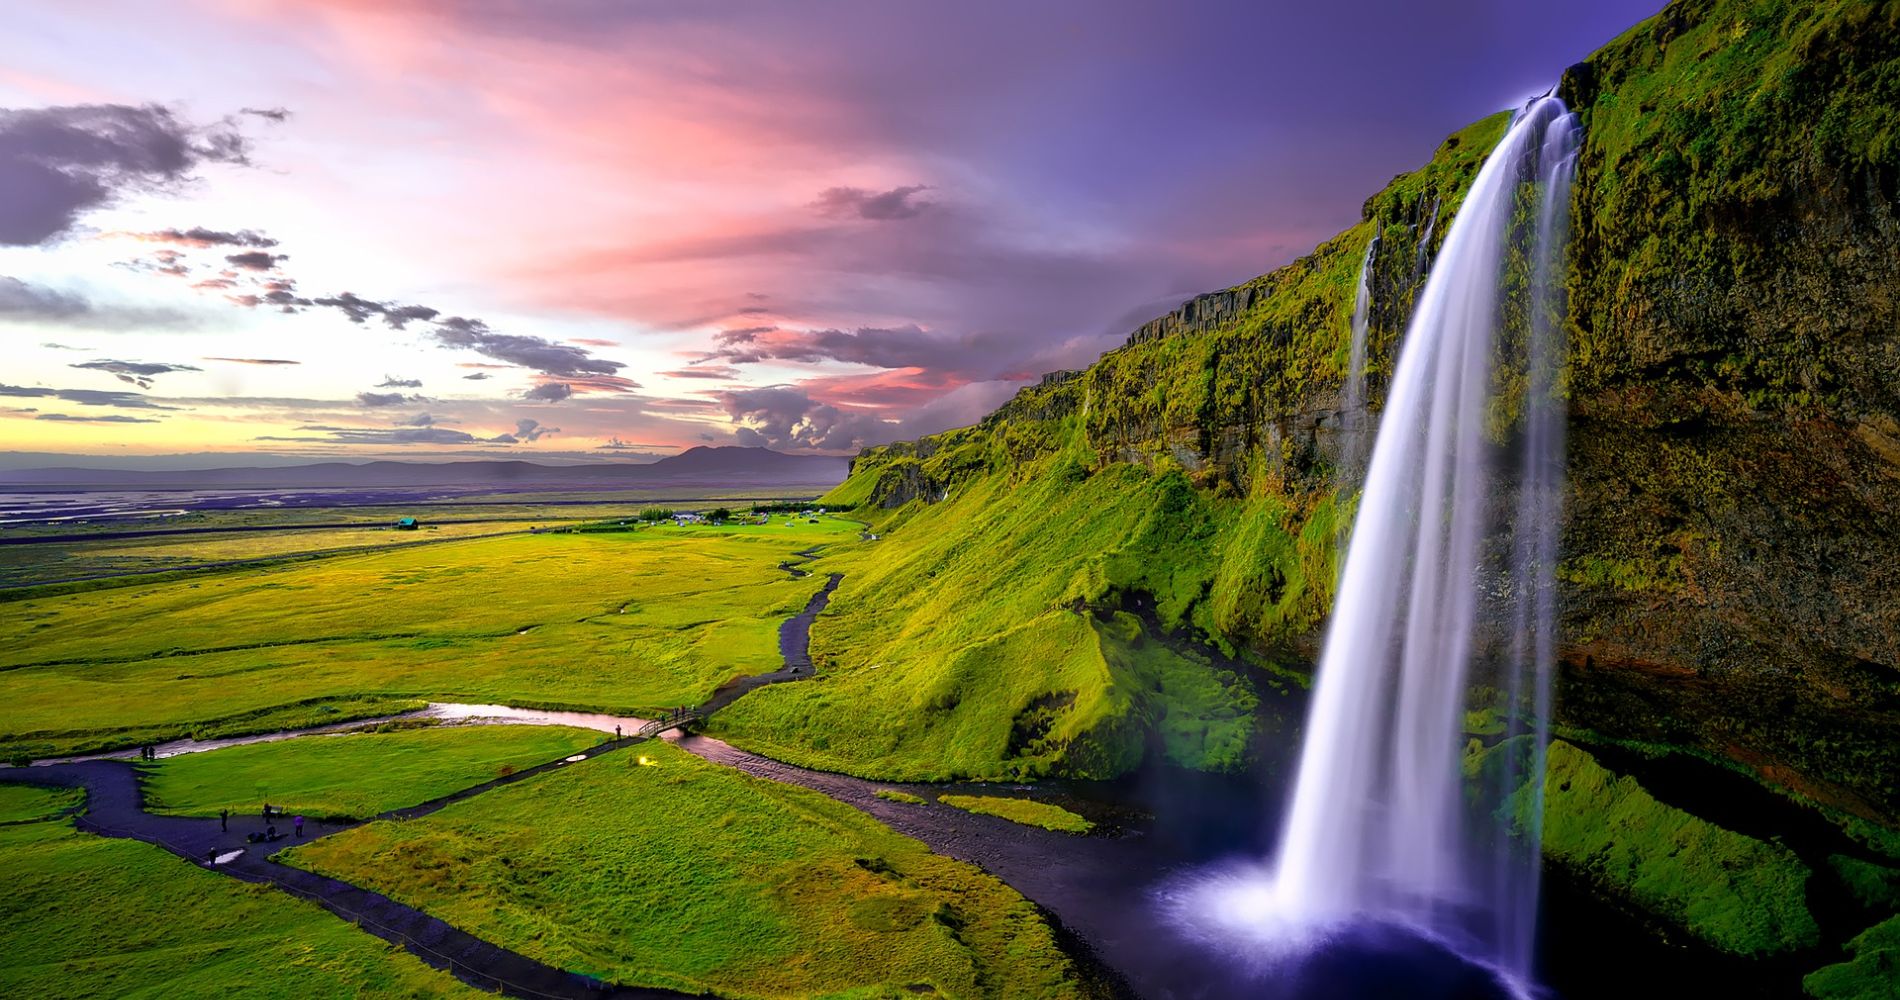 Background Image - Iceland